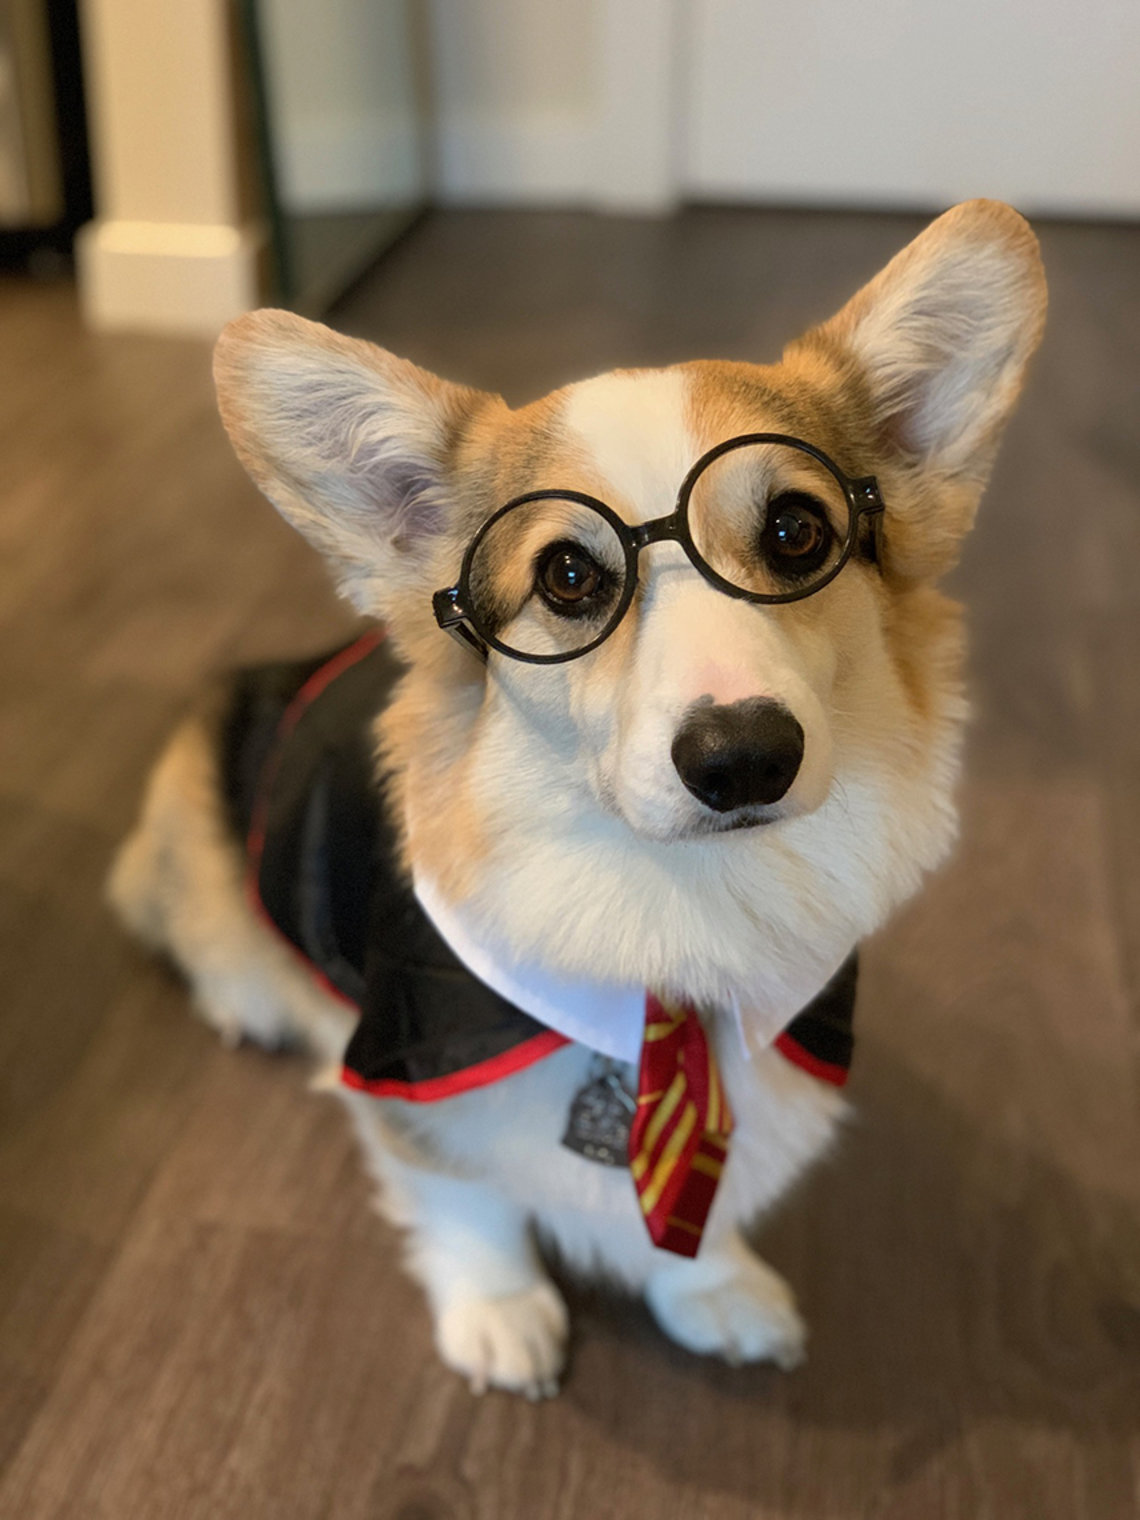 Doggie in Harry Potter glasses